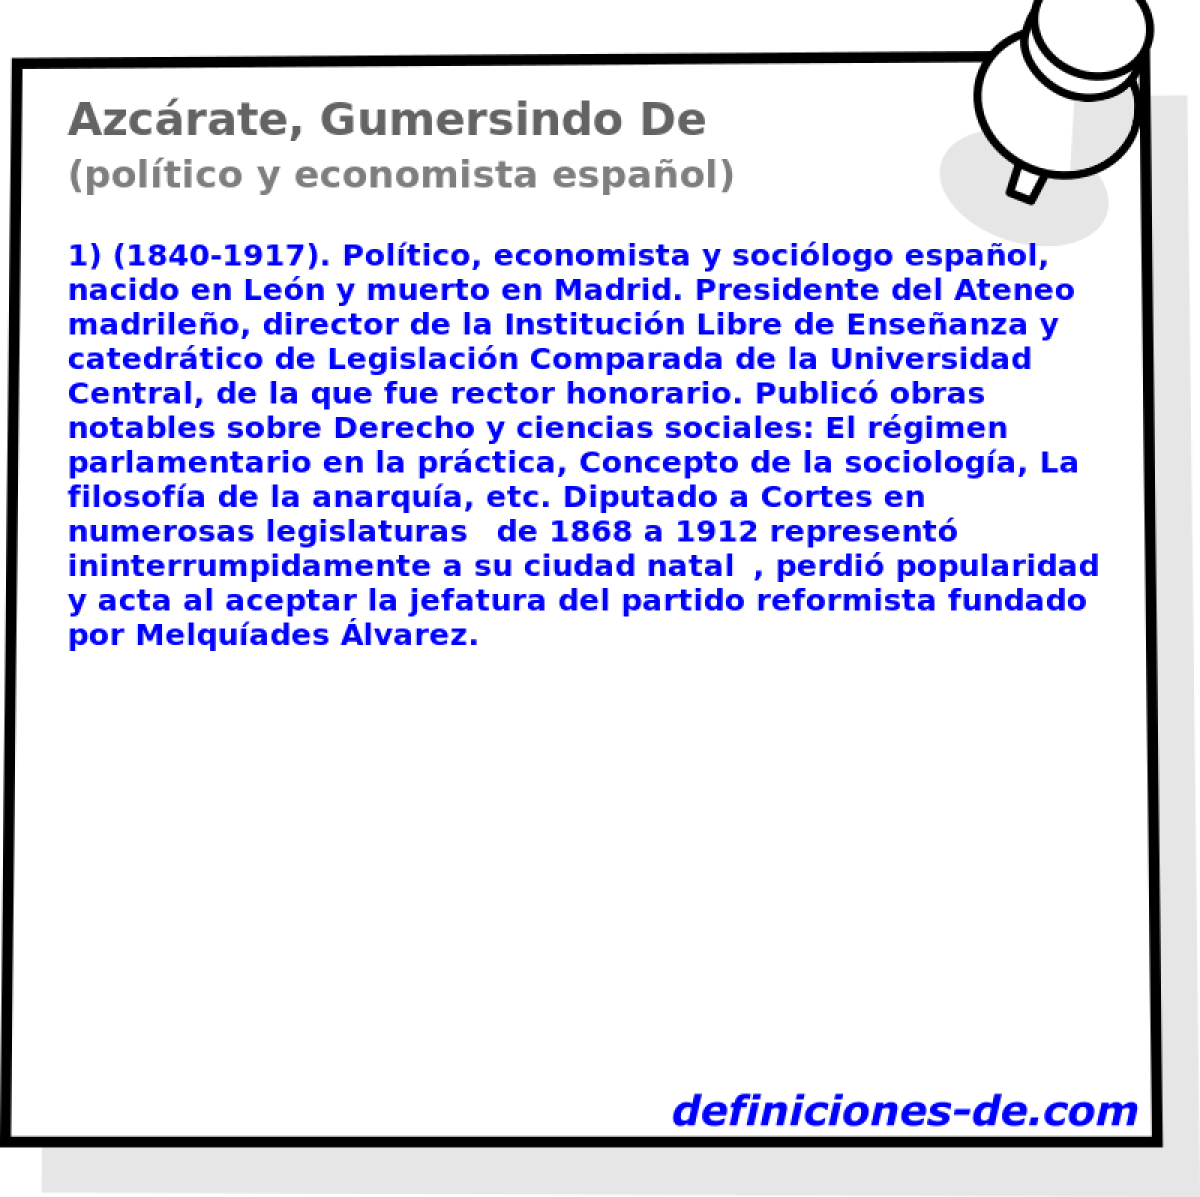 Azcrate, Gumersindo De (poltico y economista espaol)